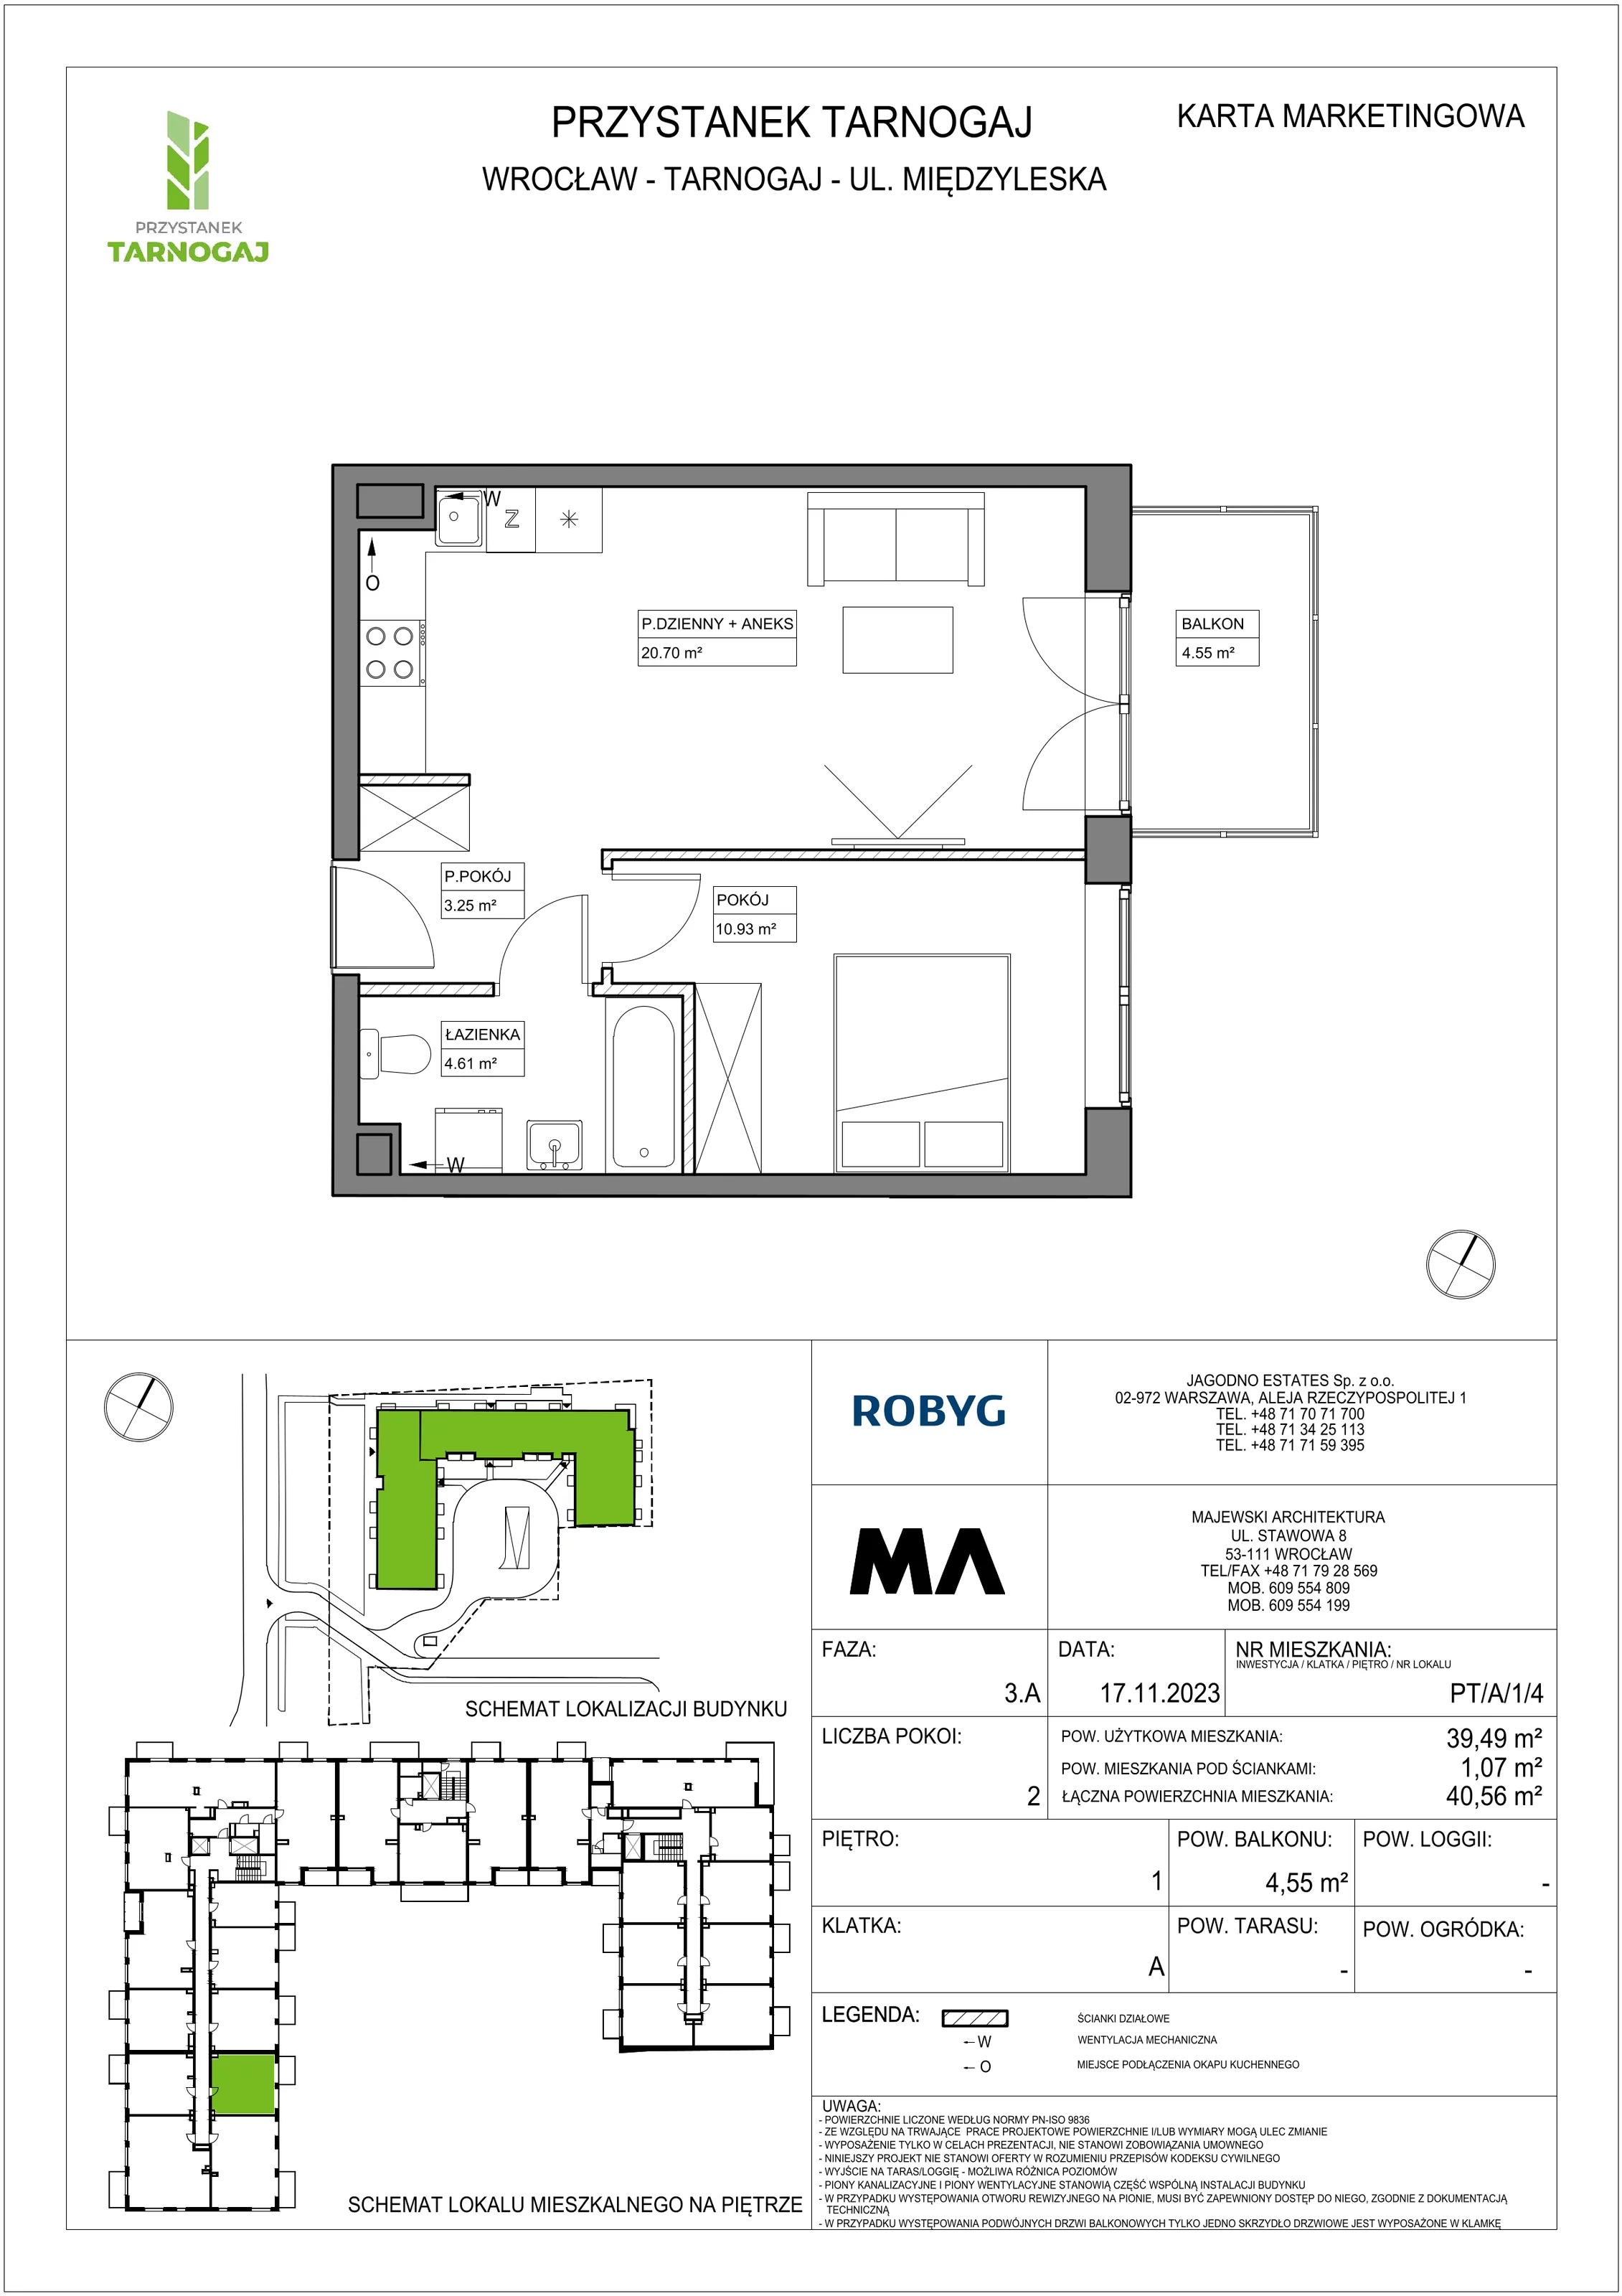 Mieszkanie 39,49 m², piętro 1, oferta nr PT/A/1/4, Przystanek Tarnogaj, Wrocław, Tarnogaj, Krzyki, ul. Międzyleska / Gazowa